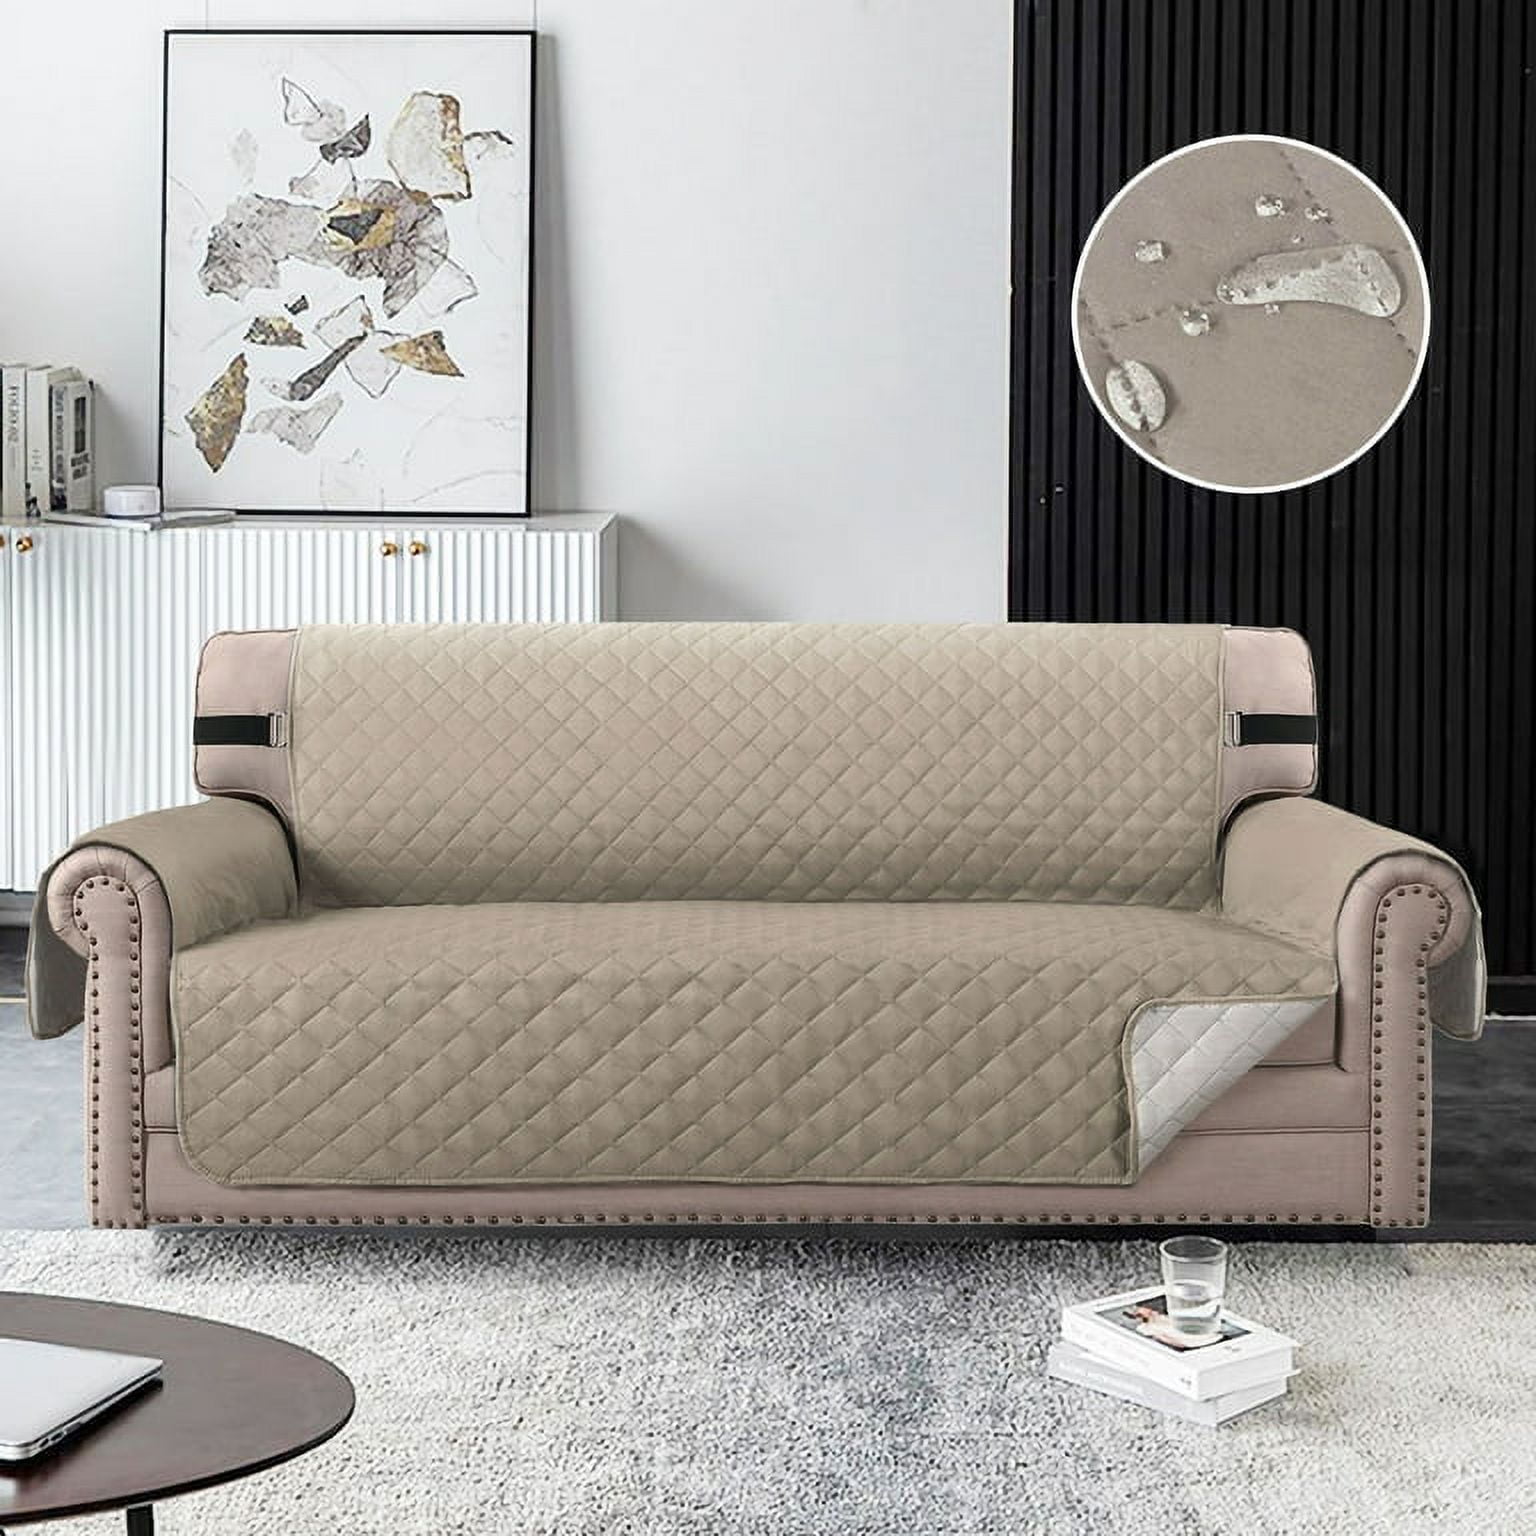 Mainstays Sofa Quilted Plush Fabric Pet Cover Multipurpose